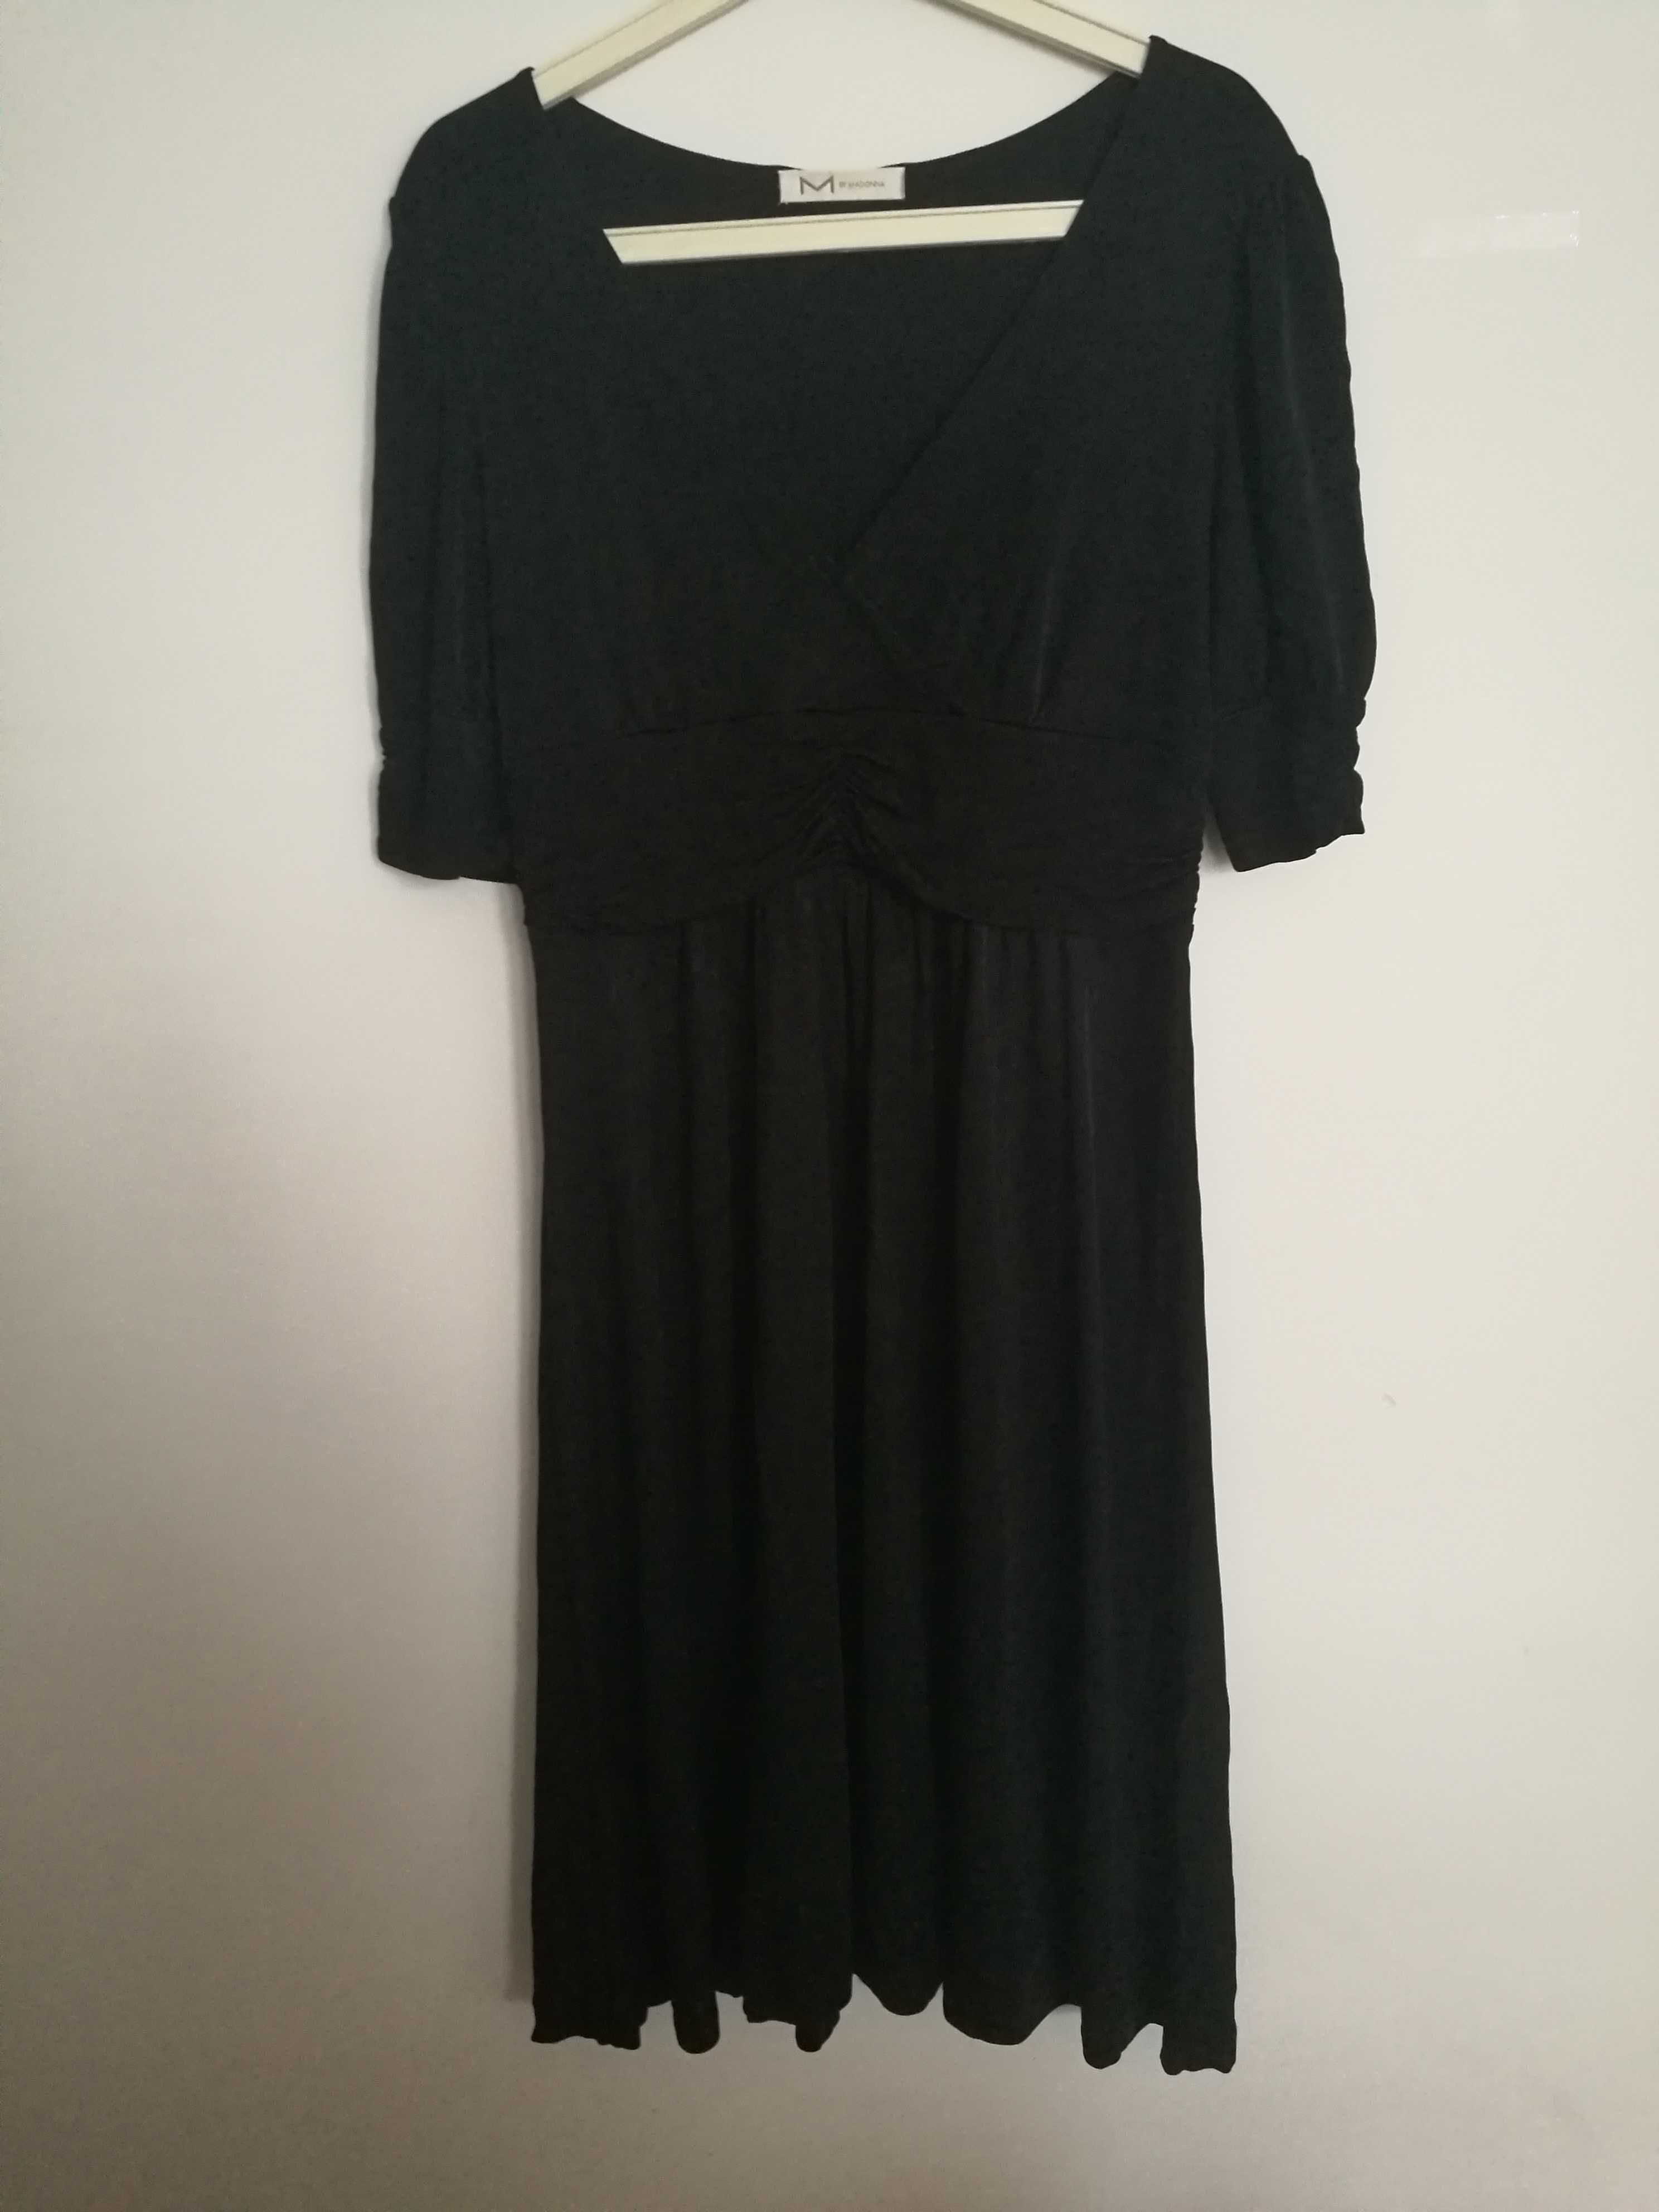 H&M, rozmiar 42, jak nowa czarna suknia